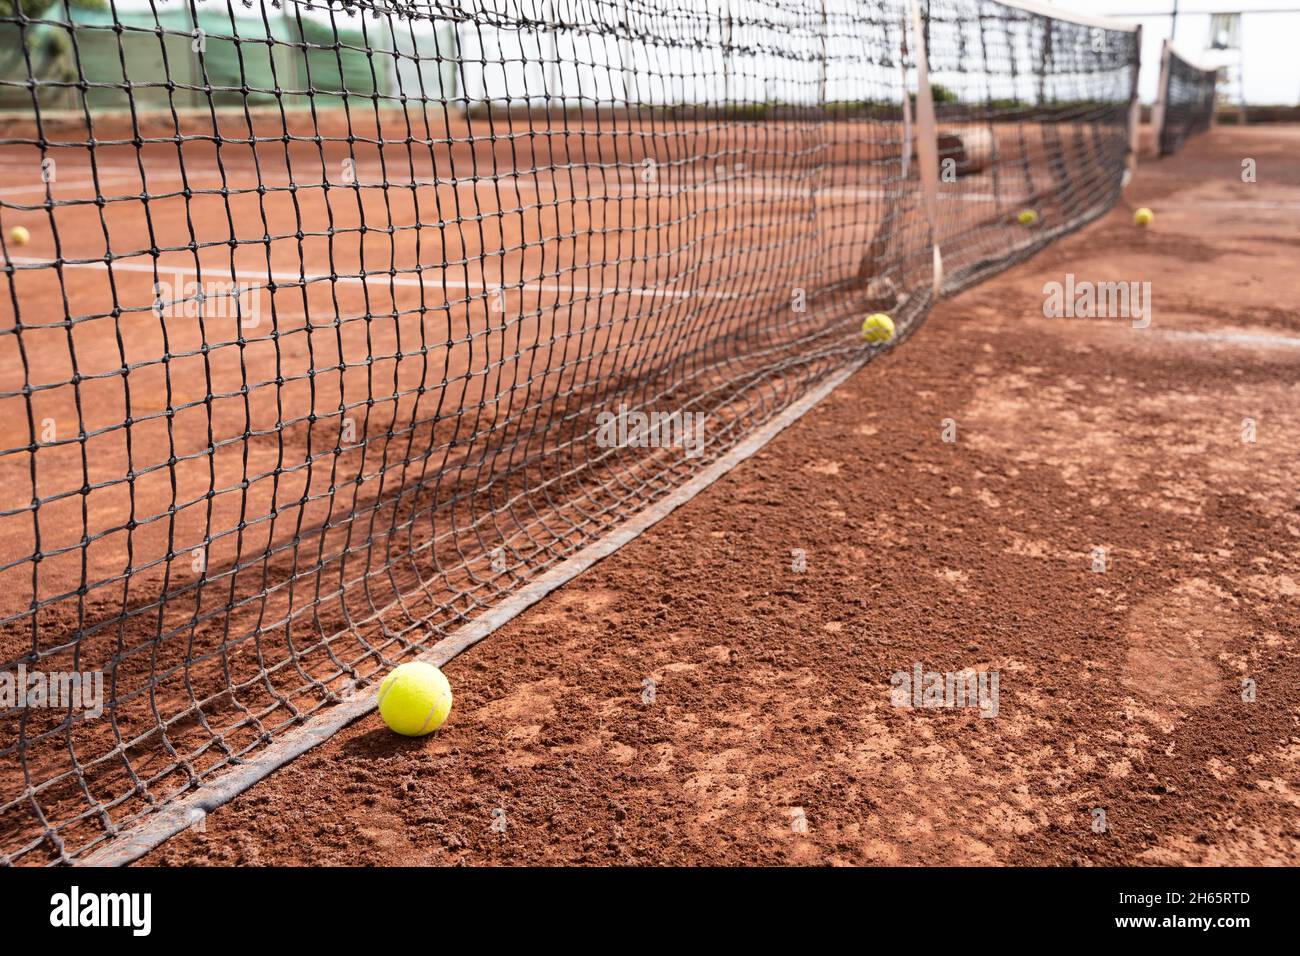 Tennisbälle im Netz auf dem Sandplatz. Sportturnier, Trainingskonzepte Stockfoto